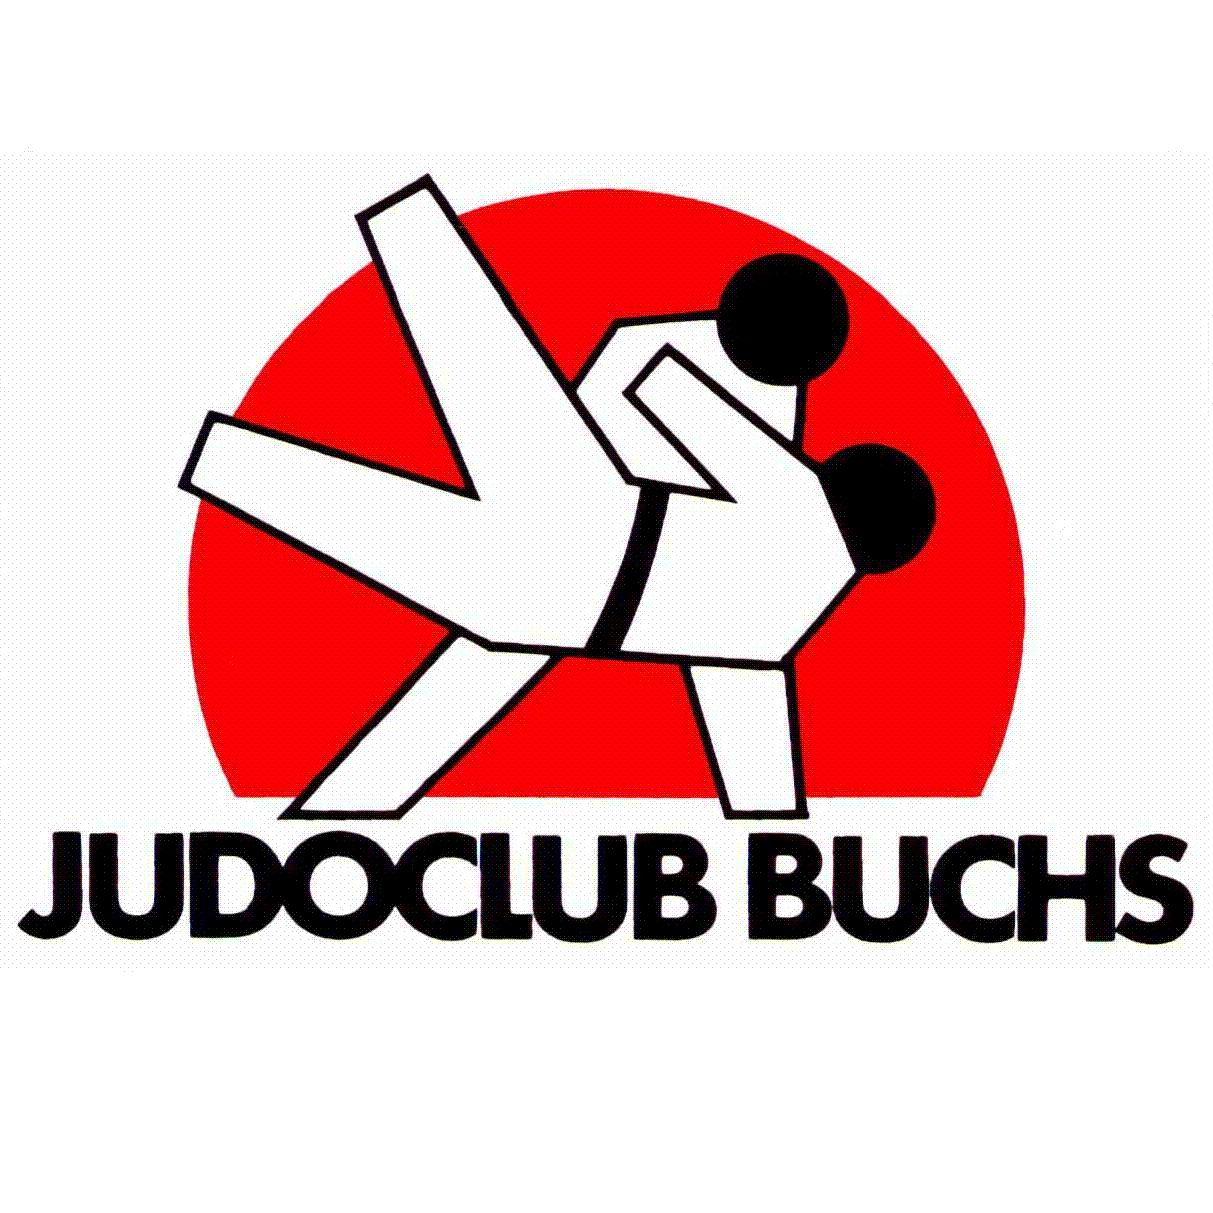 (c) Judoclub-buchs.ch